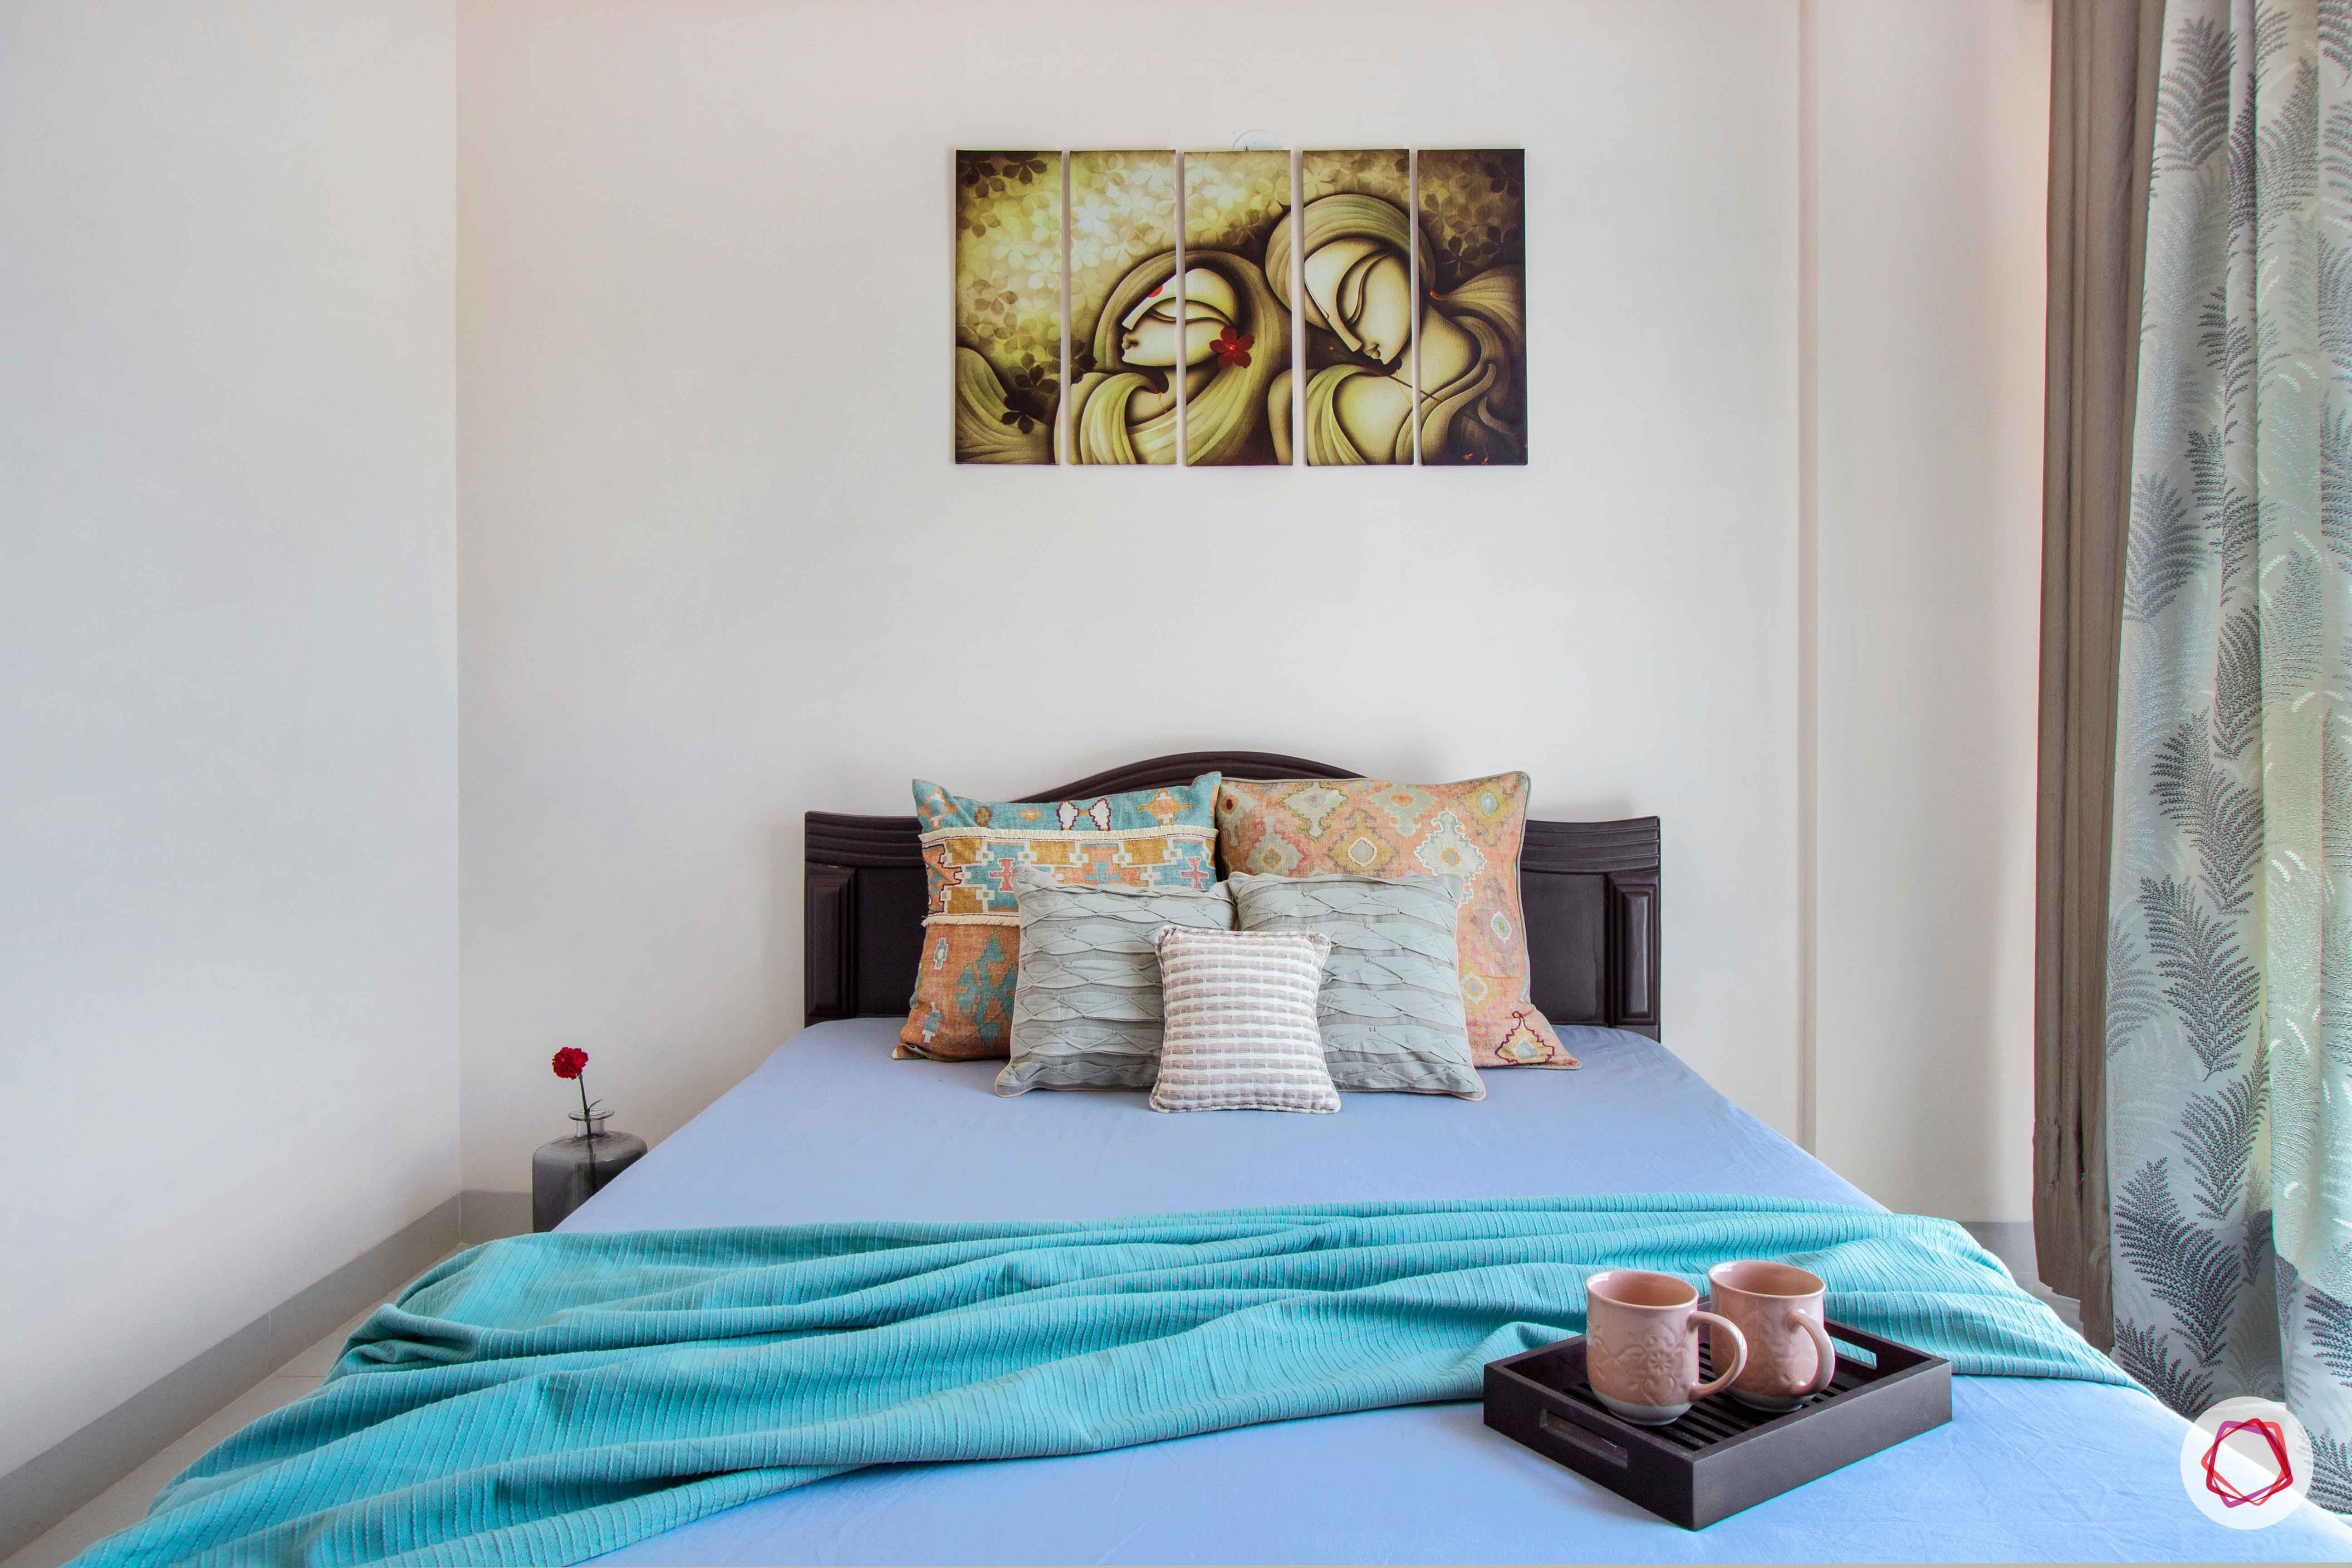 snn raj greenbay-guest bedroom-bed-wall art